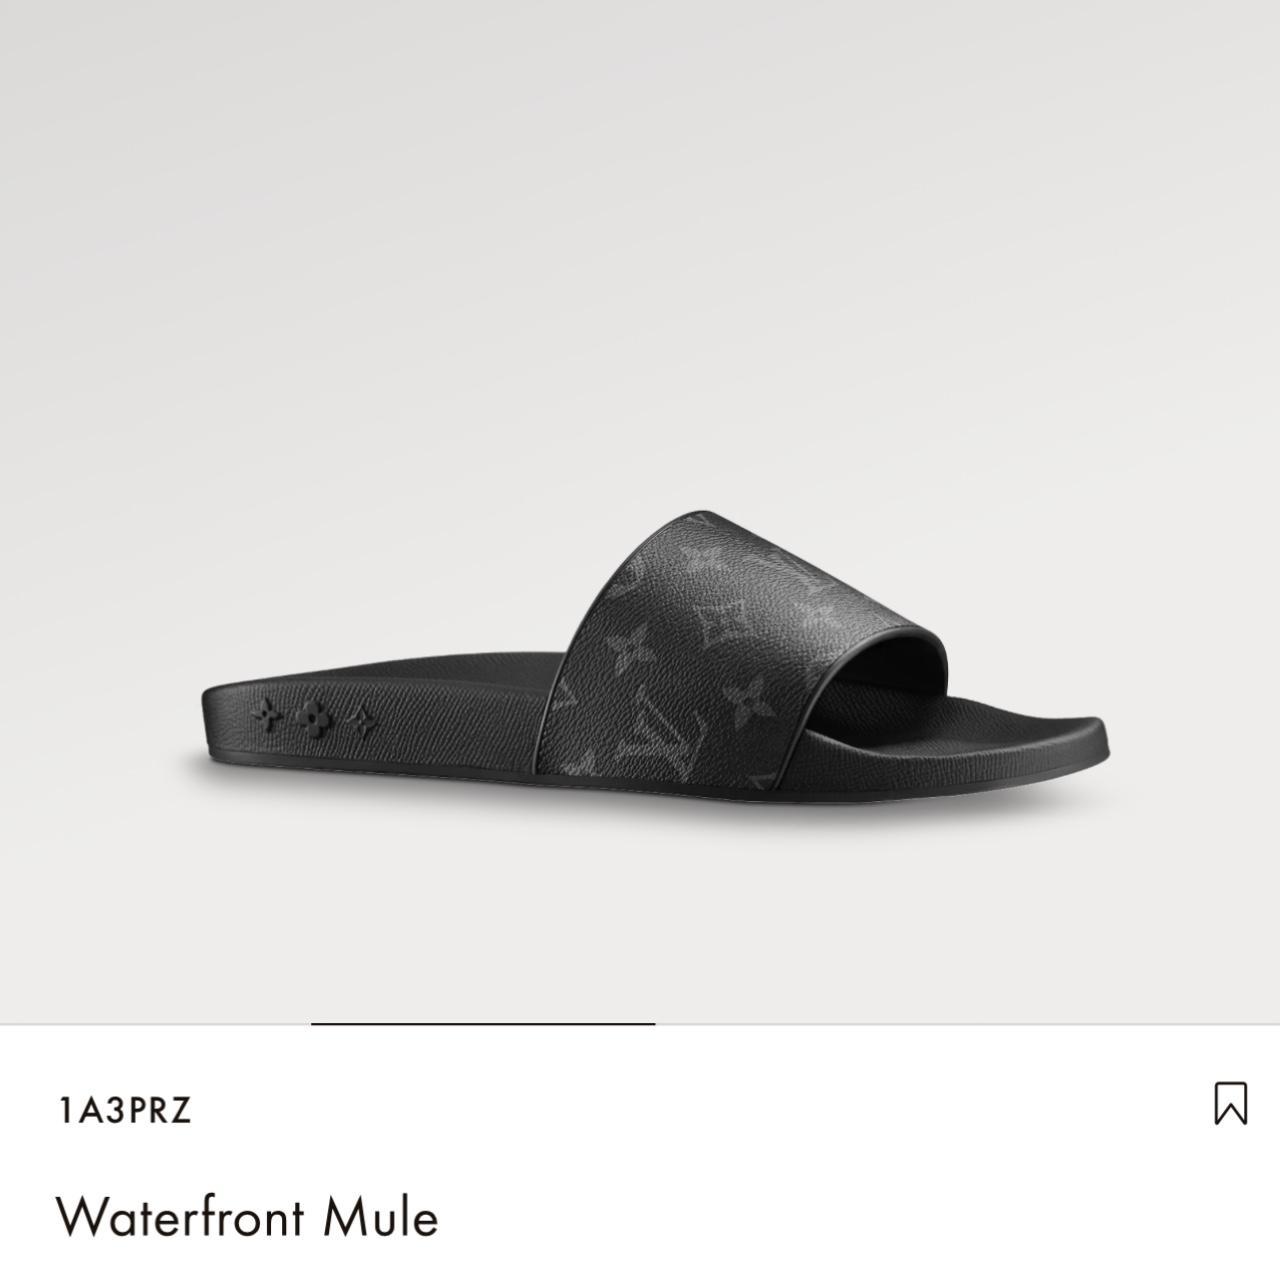 Louis Vuitton Slides Men 